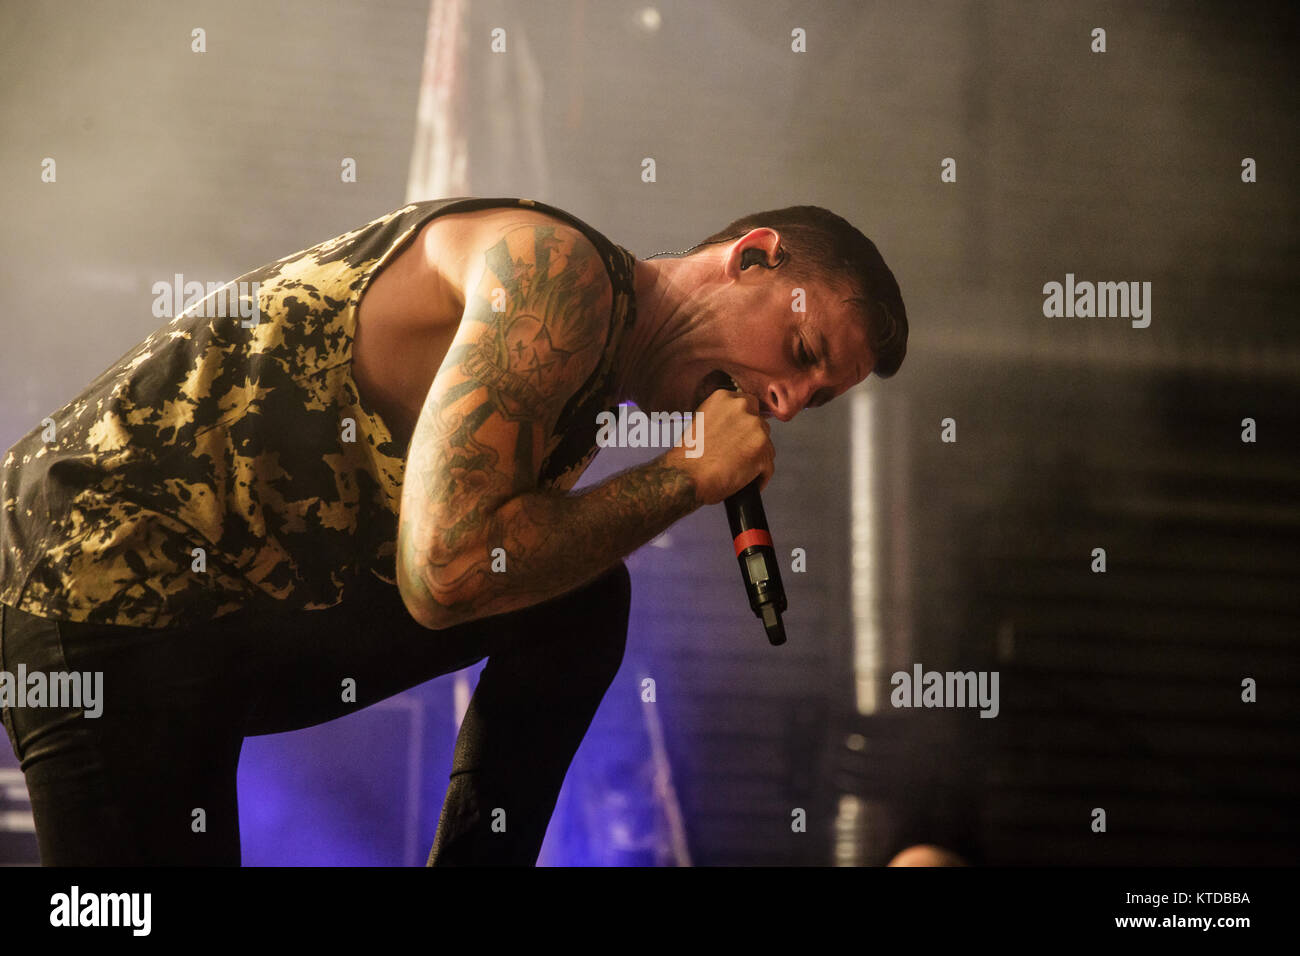 La Australian metalcore band Parkway Drive esegue un concerto dal vivo a Amager Bio in Copenhagen. Qui la cantante Winston McCall è visto dal vivo sul palco. Danimarca, 10/12 2014. Foto Stock